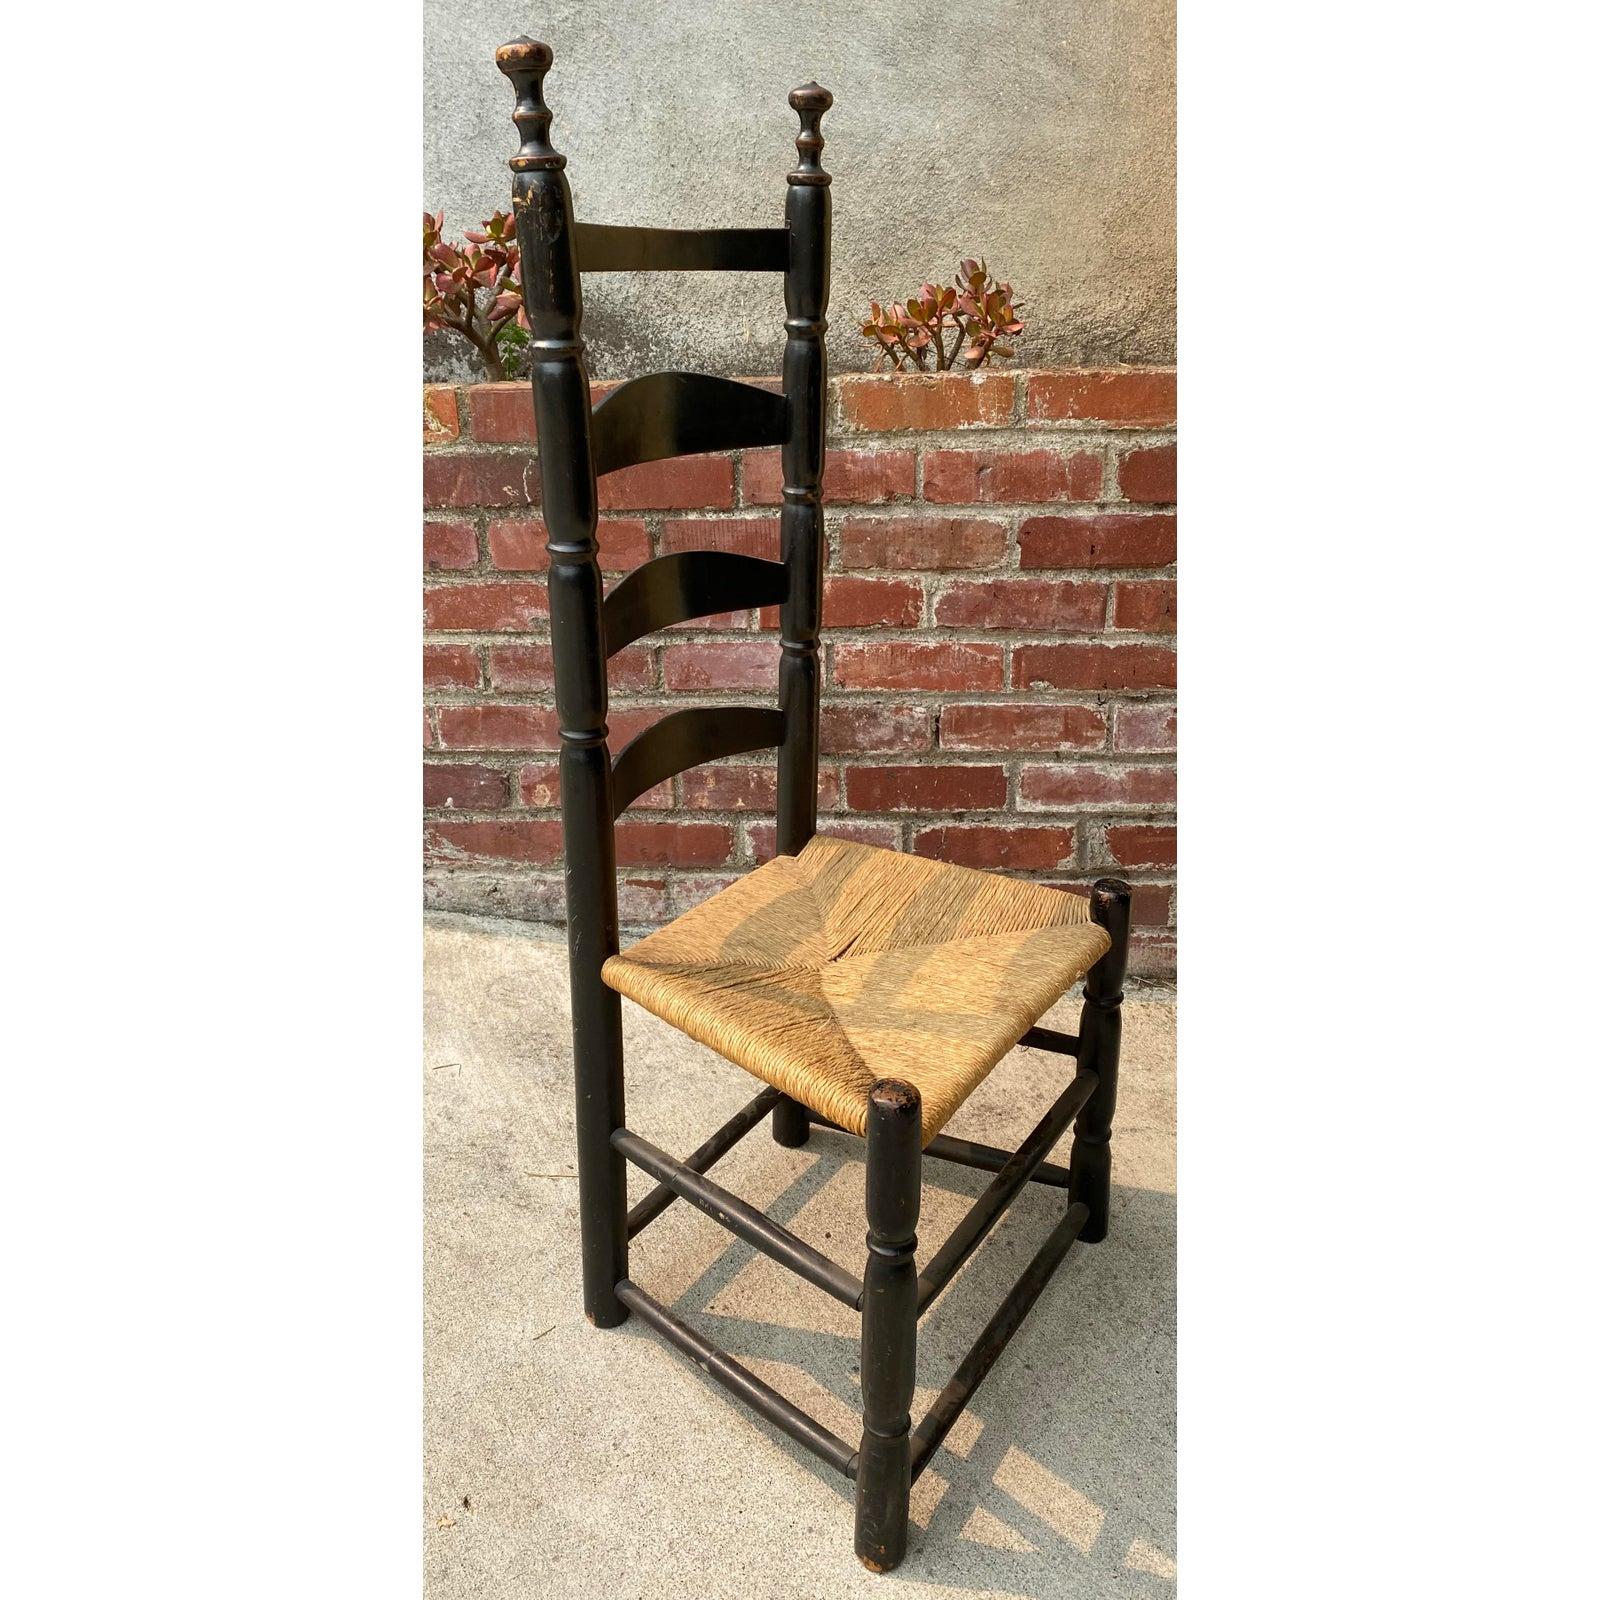 chaise américaine à dossier en échelle, 18e-19e siècle

Chaise classique à dossier en échelle avec siège en jonc

Mesures : 18